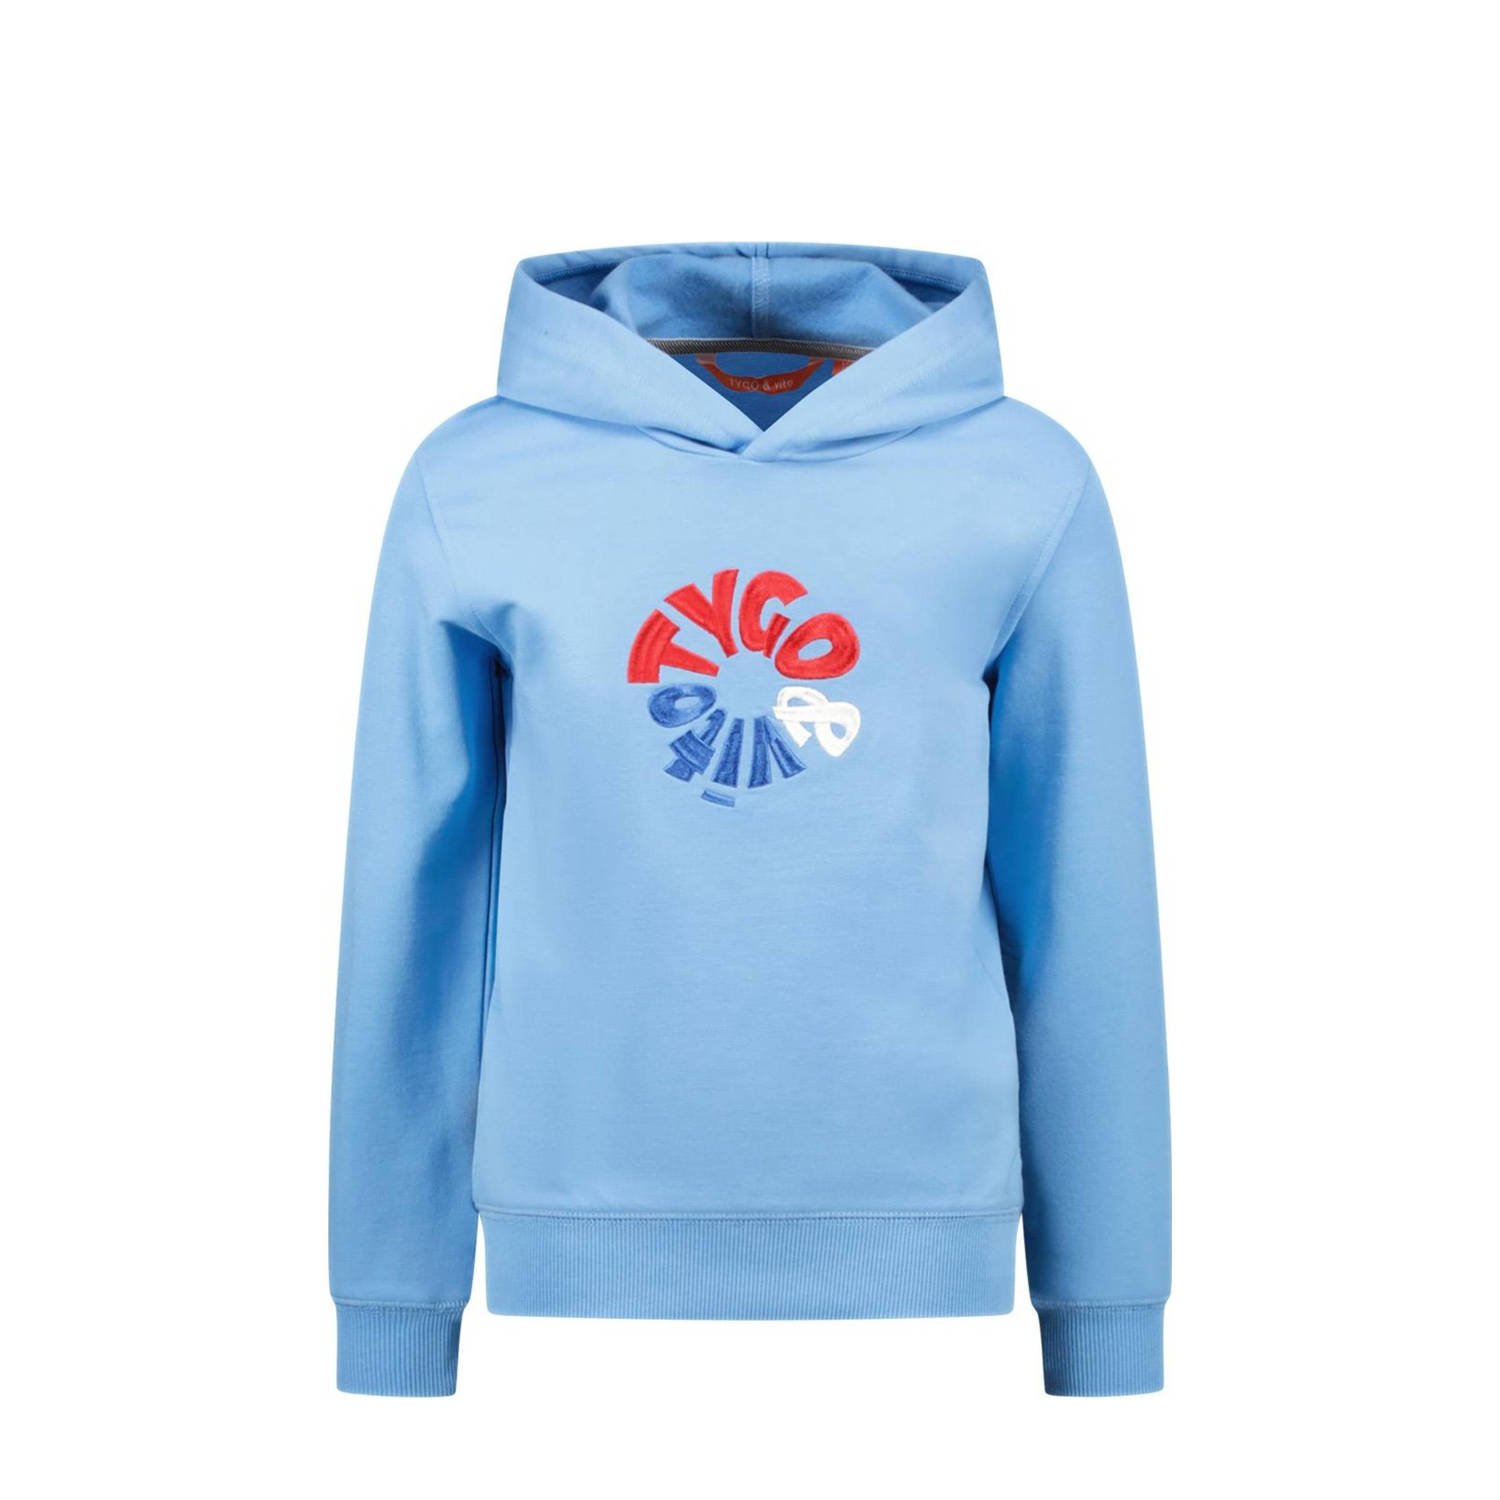 TYGO & vito hoodie Hamza met logo lichtblauw multi Sweater Logo 110 116